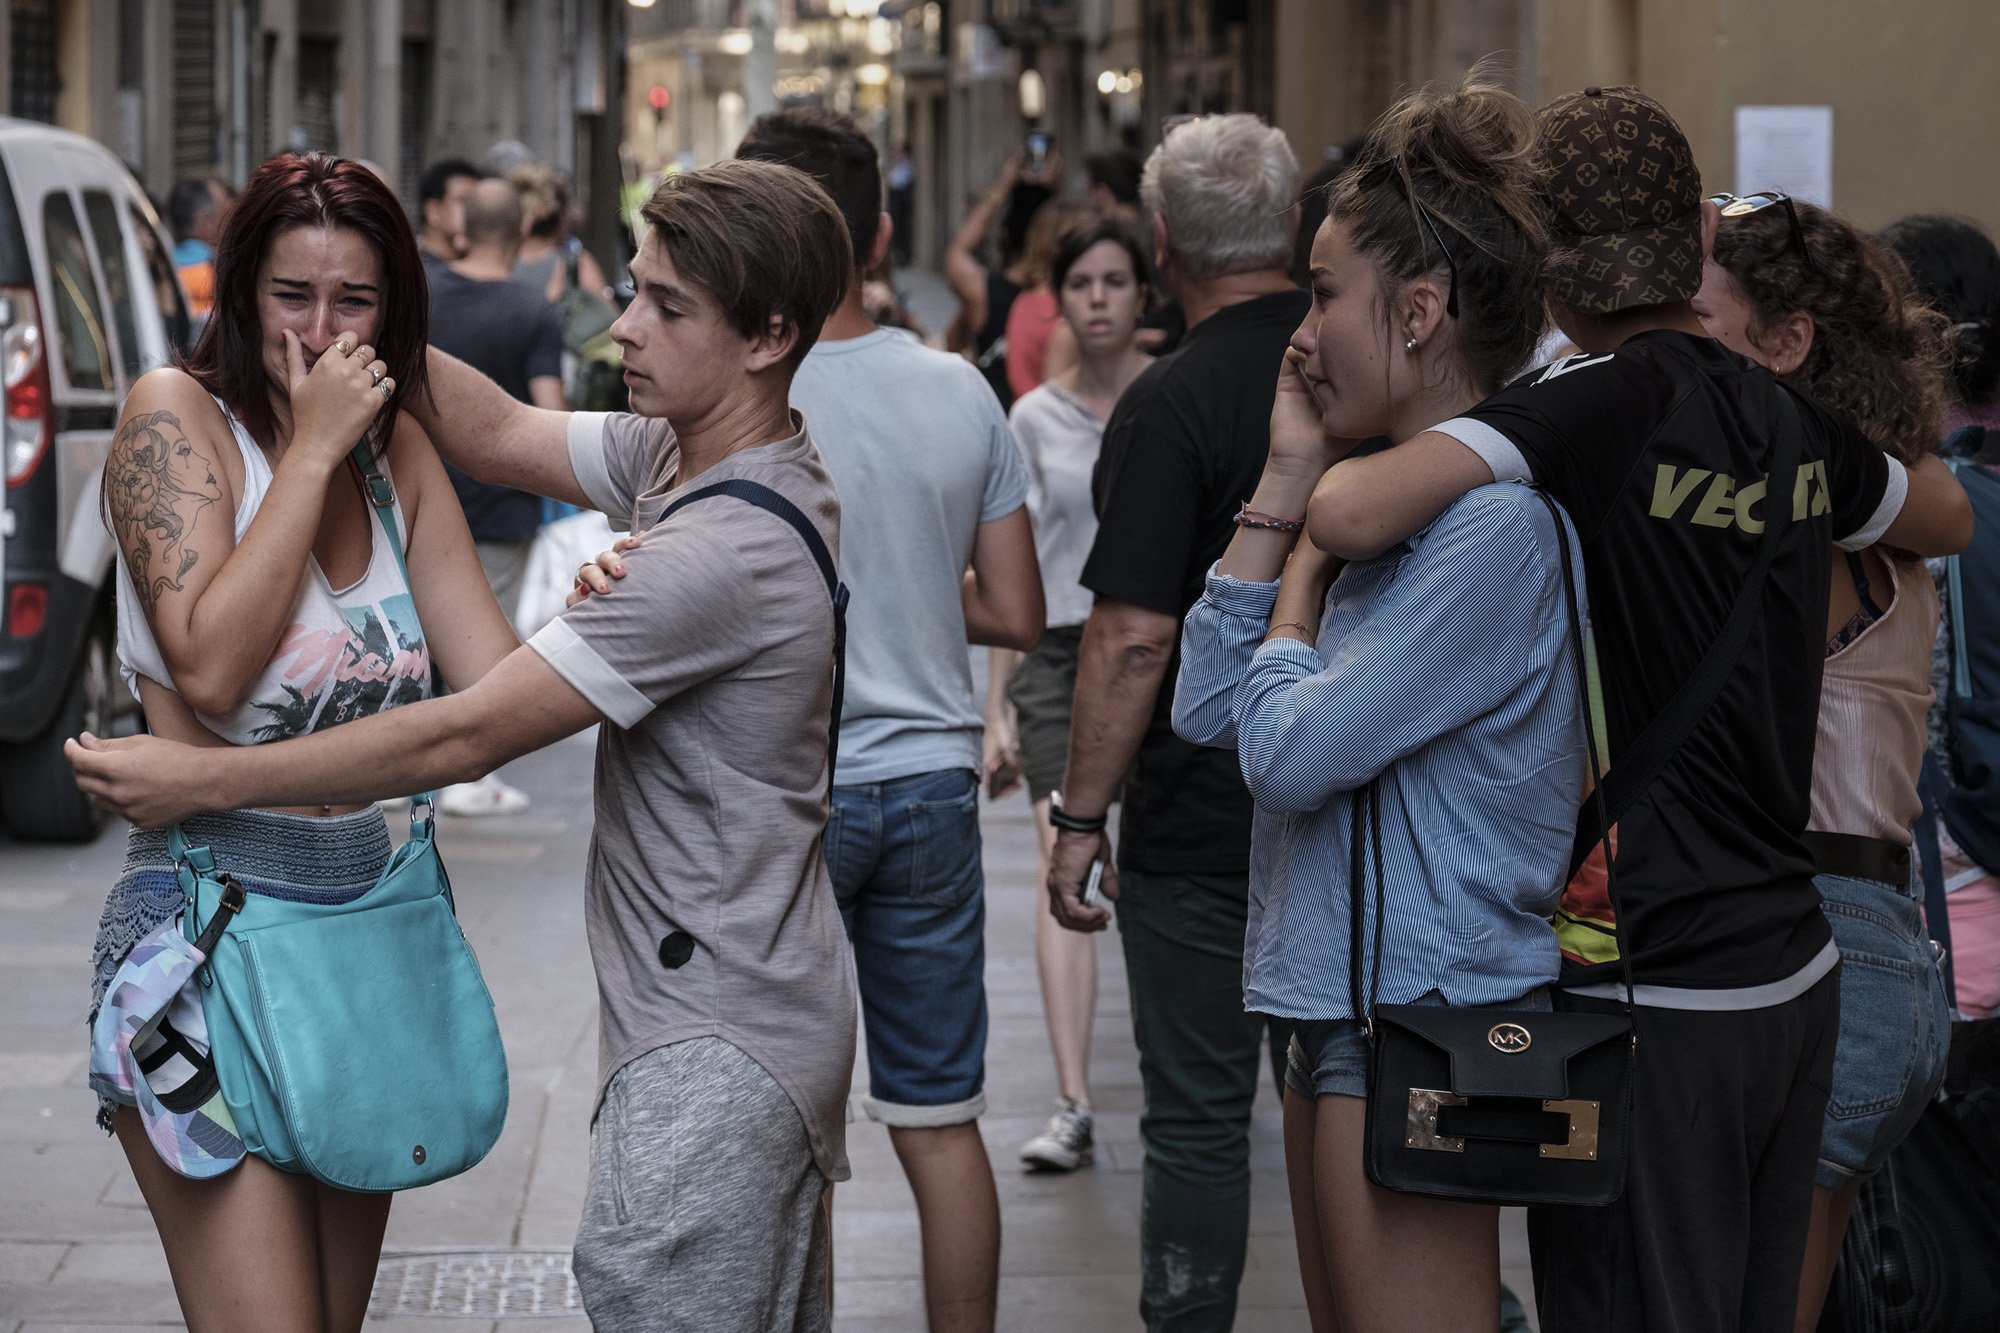 Montse Tió, directora de '3 dies d'agost': "Nadie se preocupó por las víctimas"